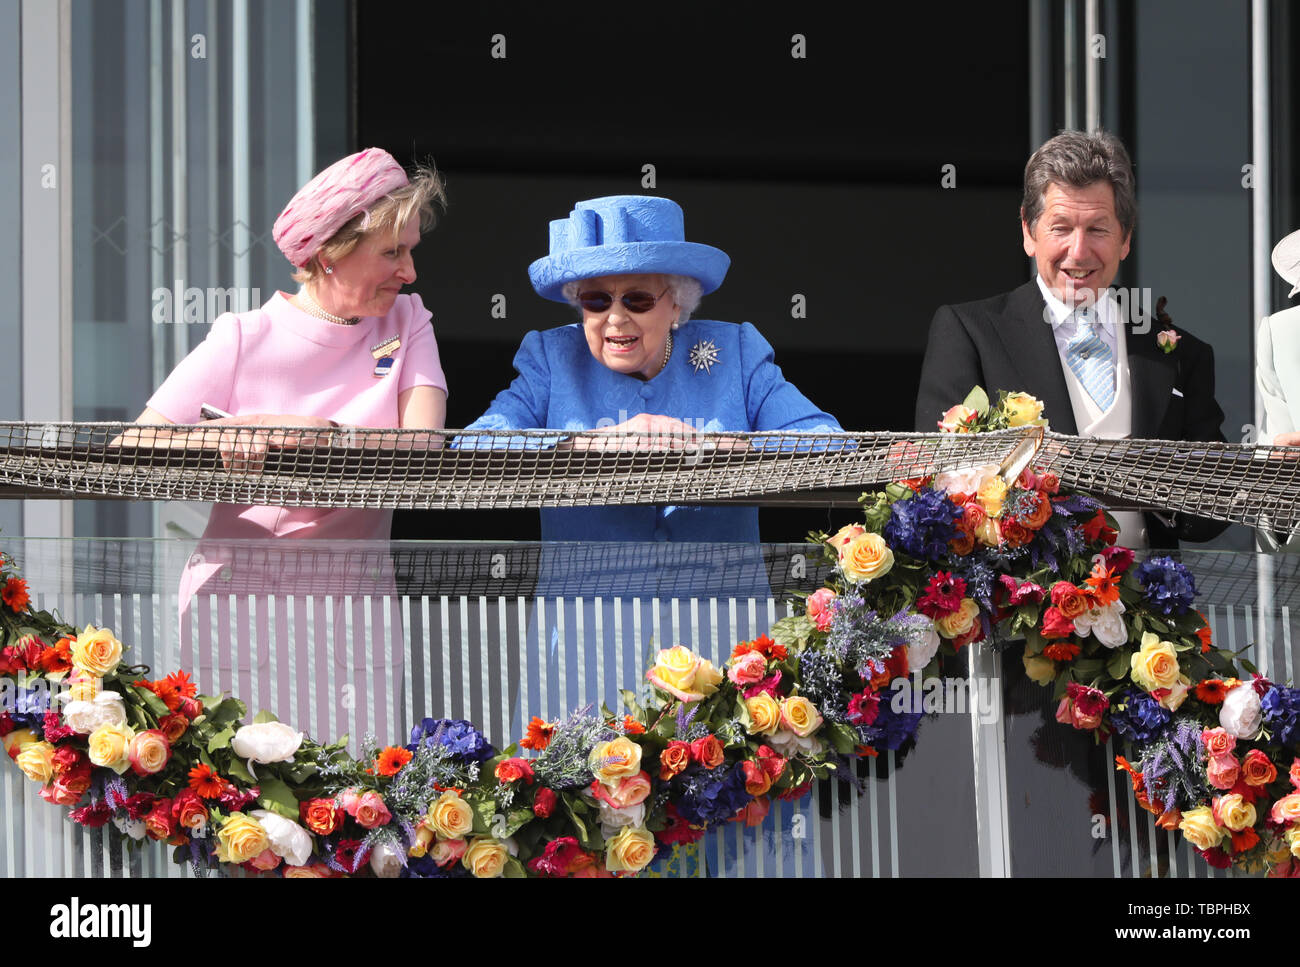 Königin Elizabeth II. ist alles Lächeln, wie sie Uhren der Investec Epsom Derby Pferderennen neben ihrem Horse Racing Manager John Warren und Julia Budd Epsom Rennbahn Vorsitzender, Epsom, Surrey, UK am 1. Juni 2019. Stockfoto